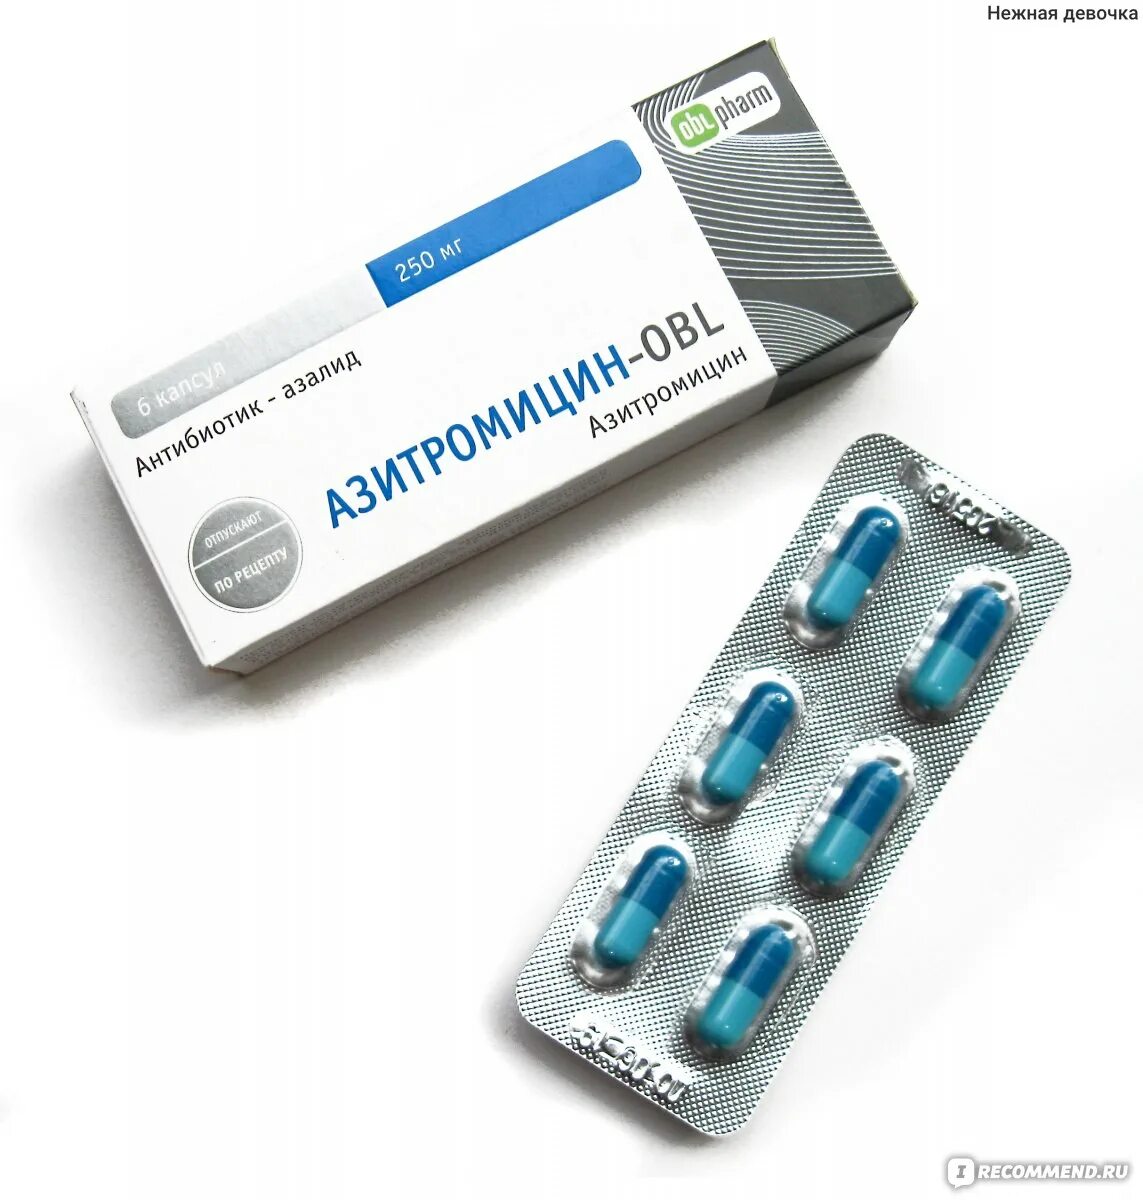 Азитромицин форте-obl. Дешевый антибиотик. Антибиотики нового поколения.